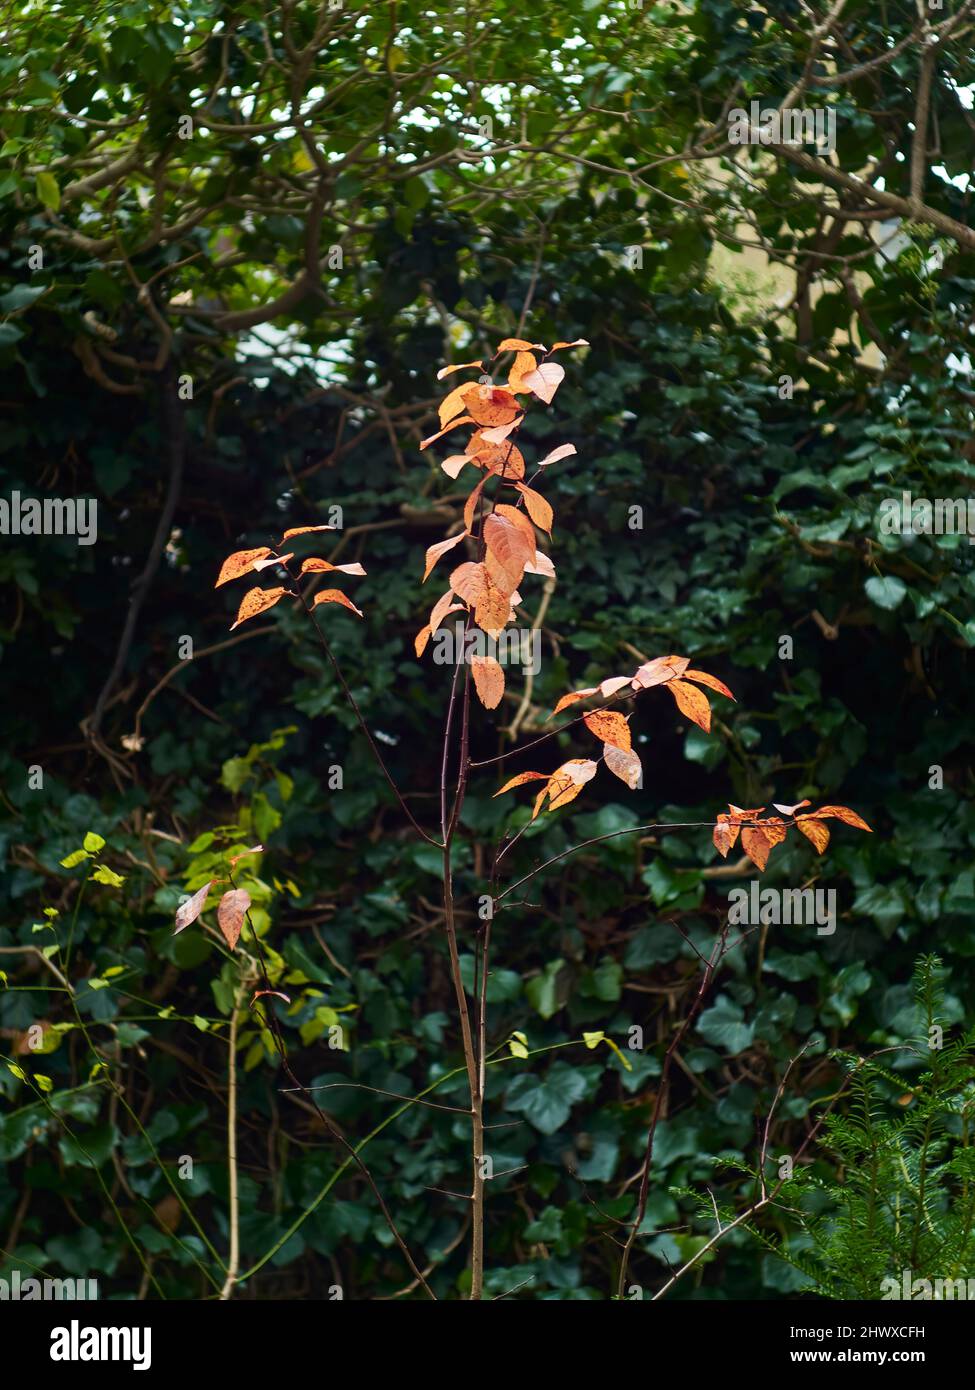 Un buisson met sur une dernière demeure de couleur automnale flamboyante avant de sombrer dans la dormance hivernale dans un jardin domestique. Banque D'Images